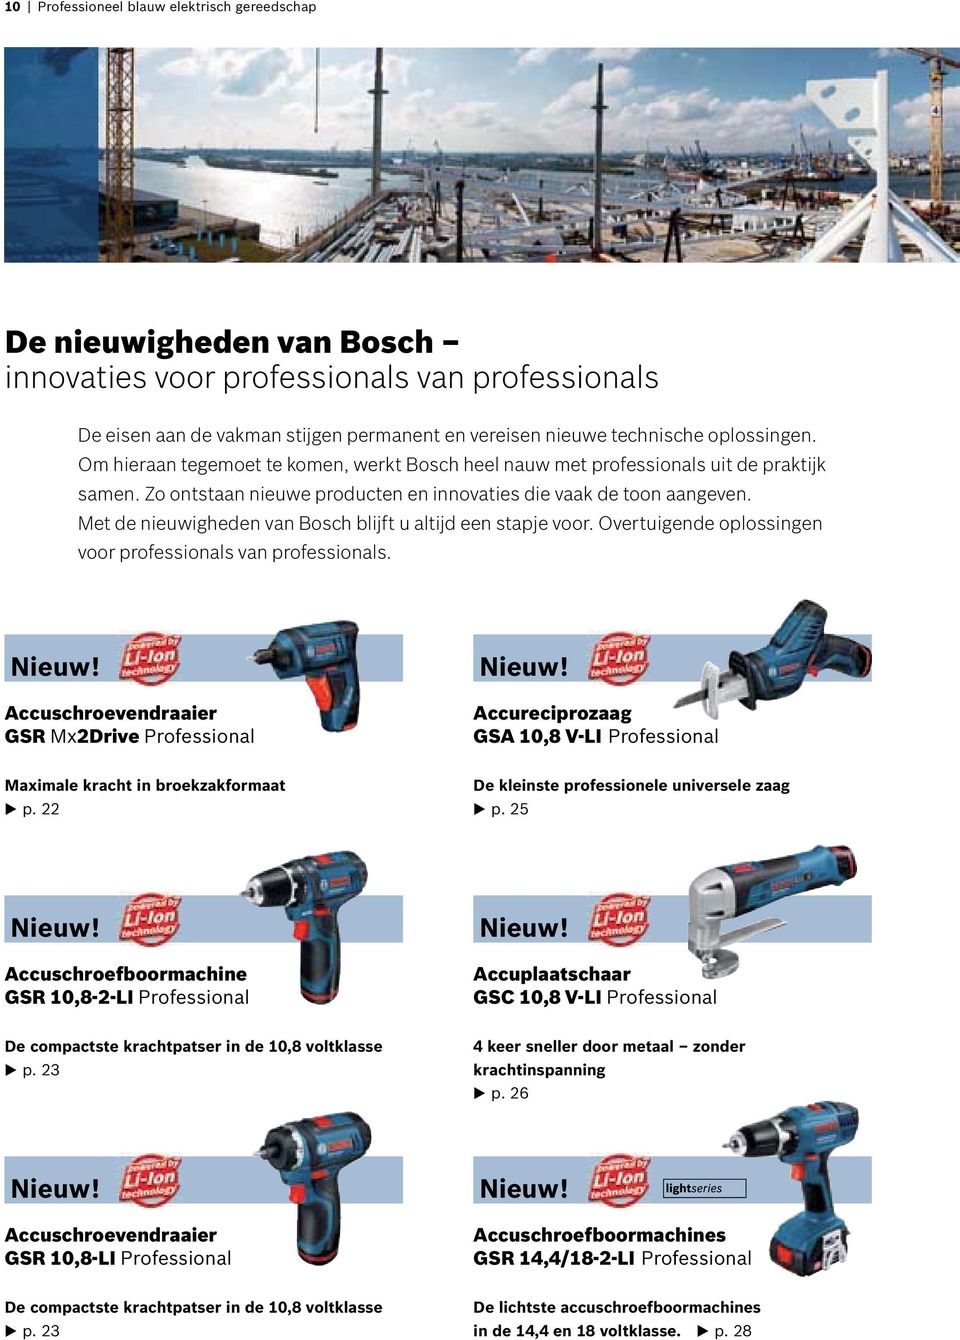 Met de nieuwigheden van Bosch blijft u altijd een stapje voor. Overtuigende oplossingen voor professionals van professionals. Nieuw! Accuschroevendraaier GSR M2Drive Nieuw!